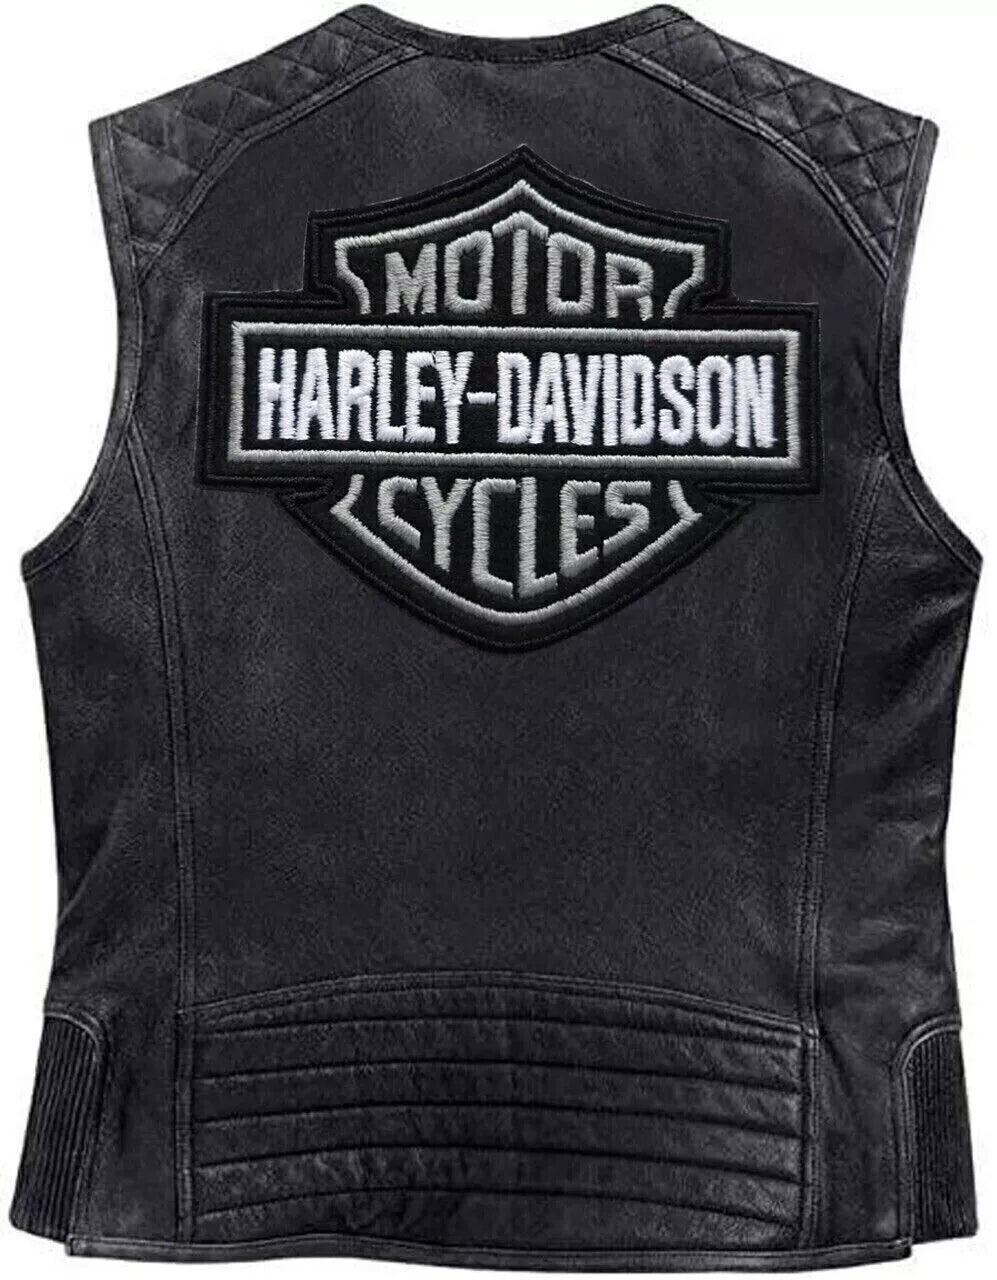 Harley Davidson Men's Moto Café Biker Vest Motorcycle Leather Vest